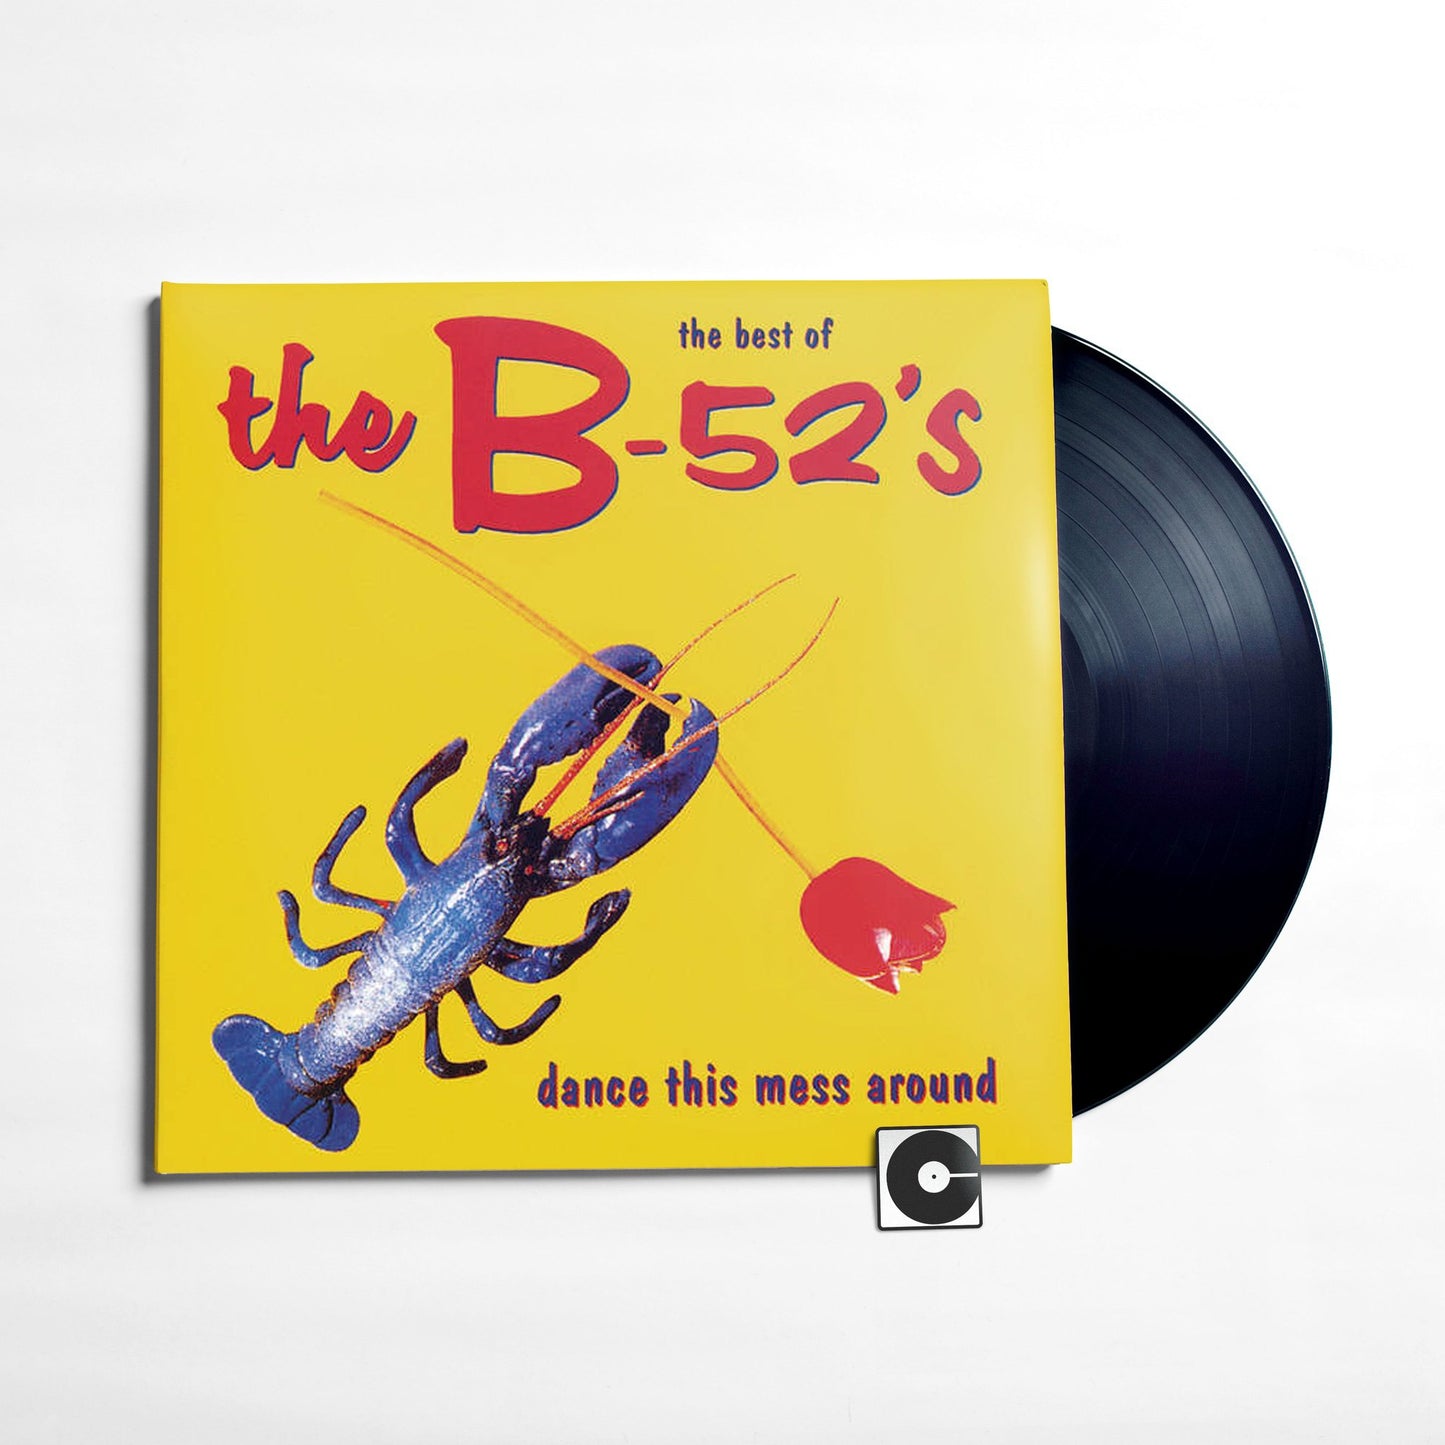 The B-52's - "Dance This Mess Around"